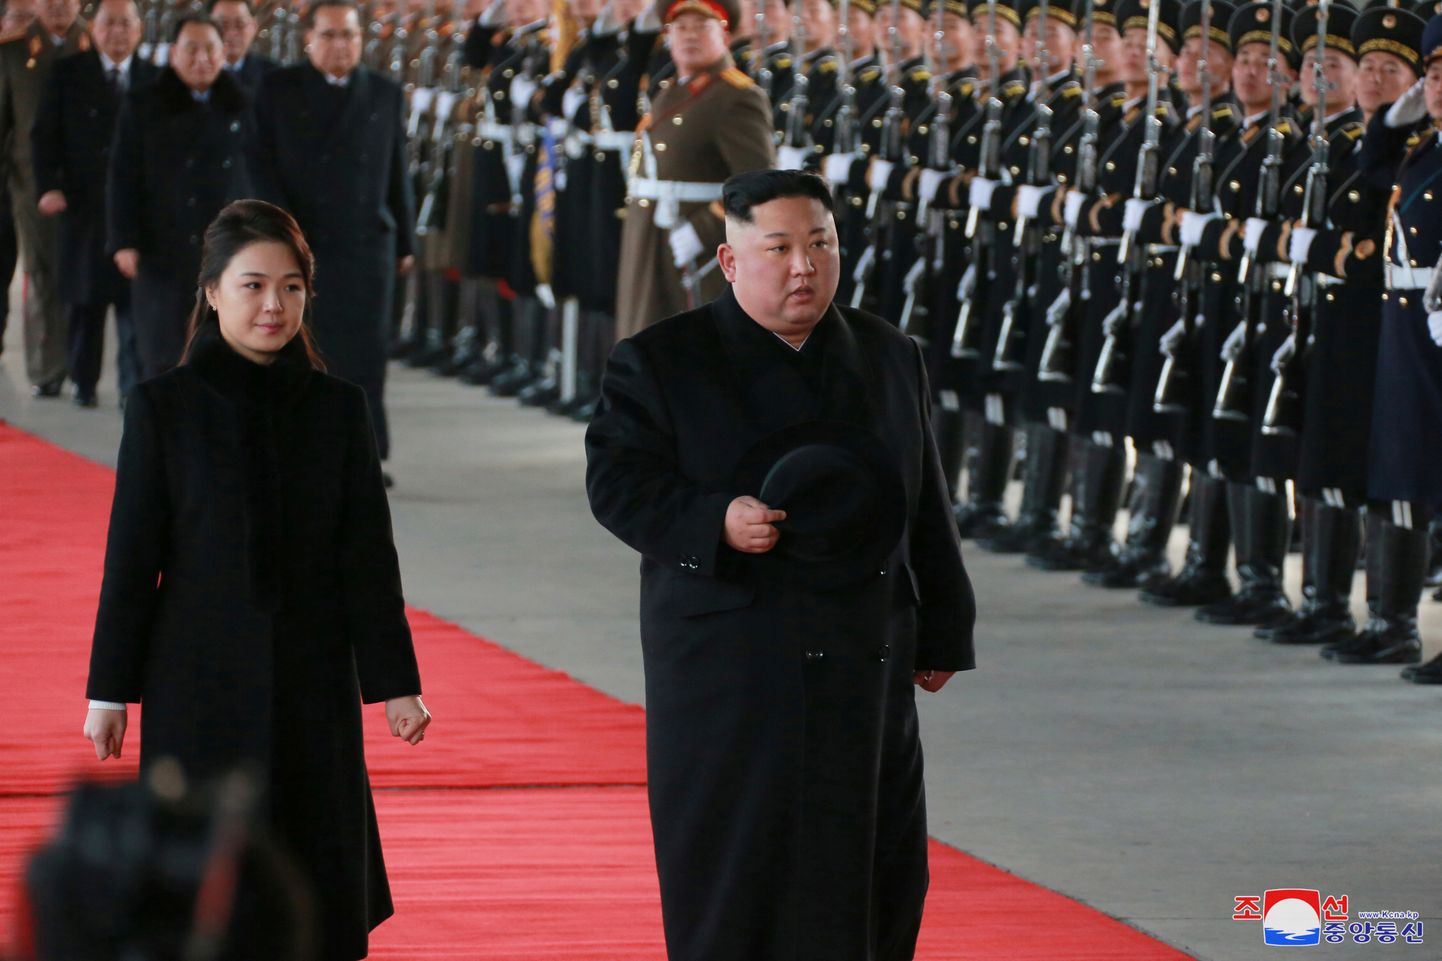 Põhja-Korea liider Kim Jong-un abikaasaga vaatamas üle auvahtkonda enne teeleasumist Pekingisse 7. jaanuaril.